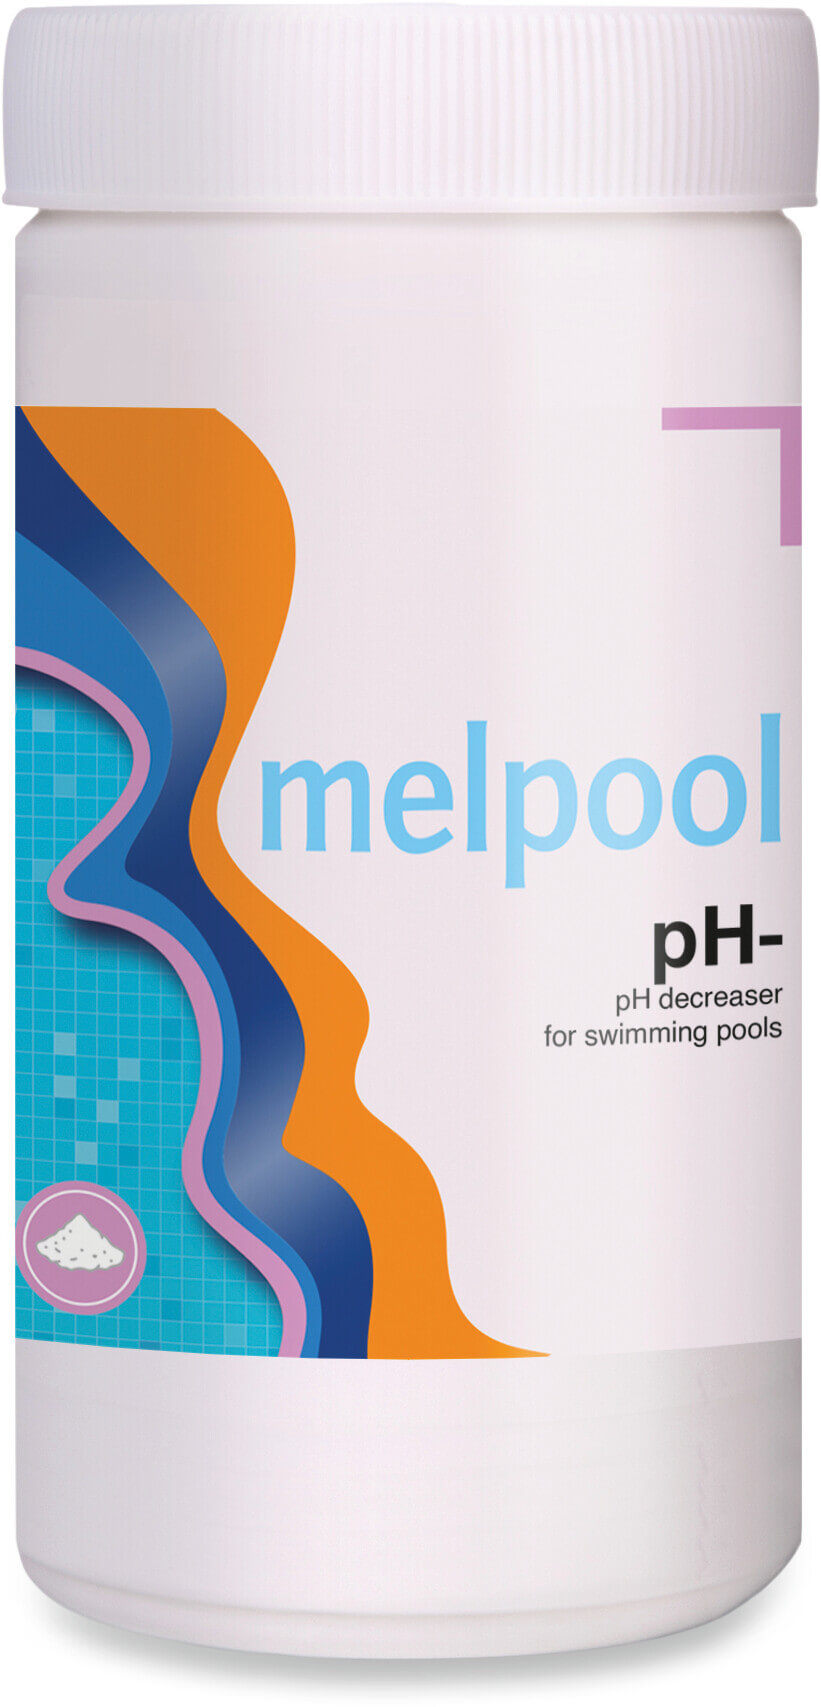 Melpool pH- natriumbisulfat för att minska pH